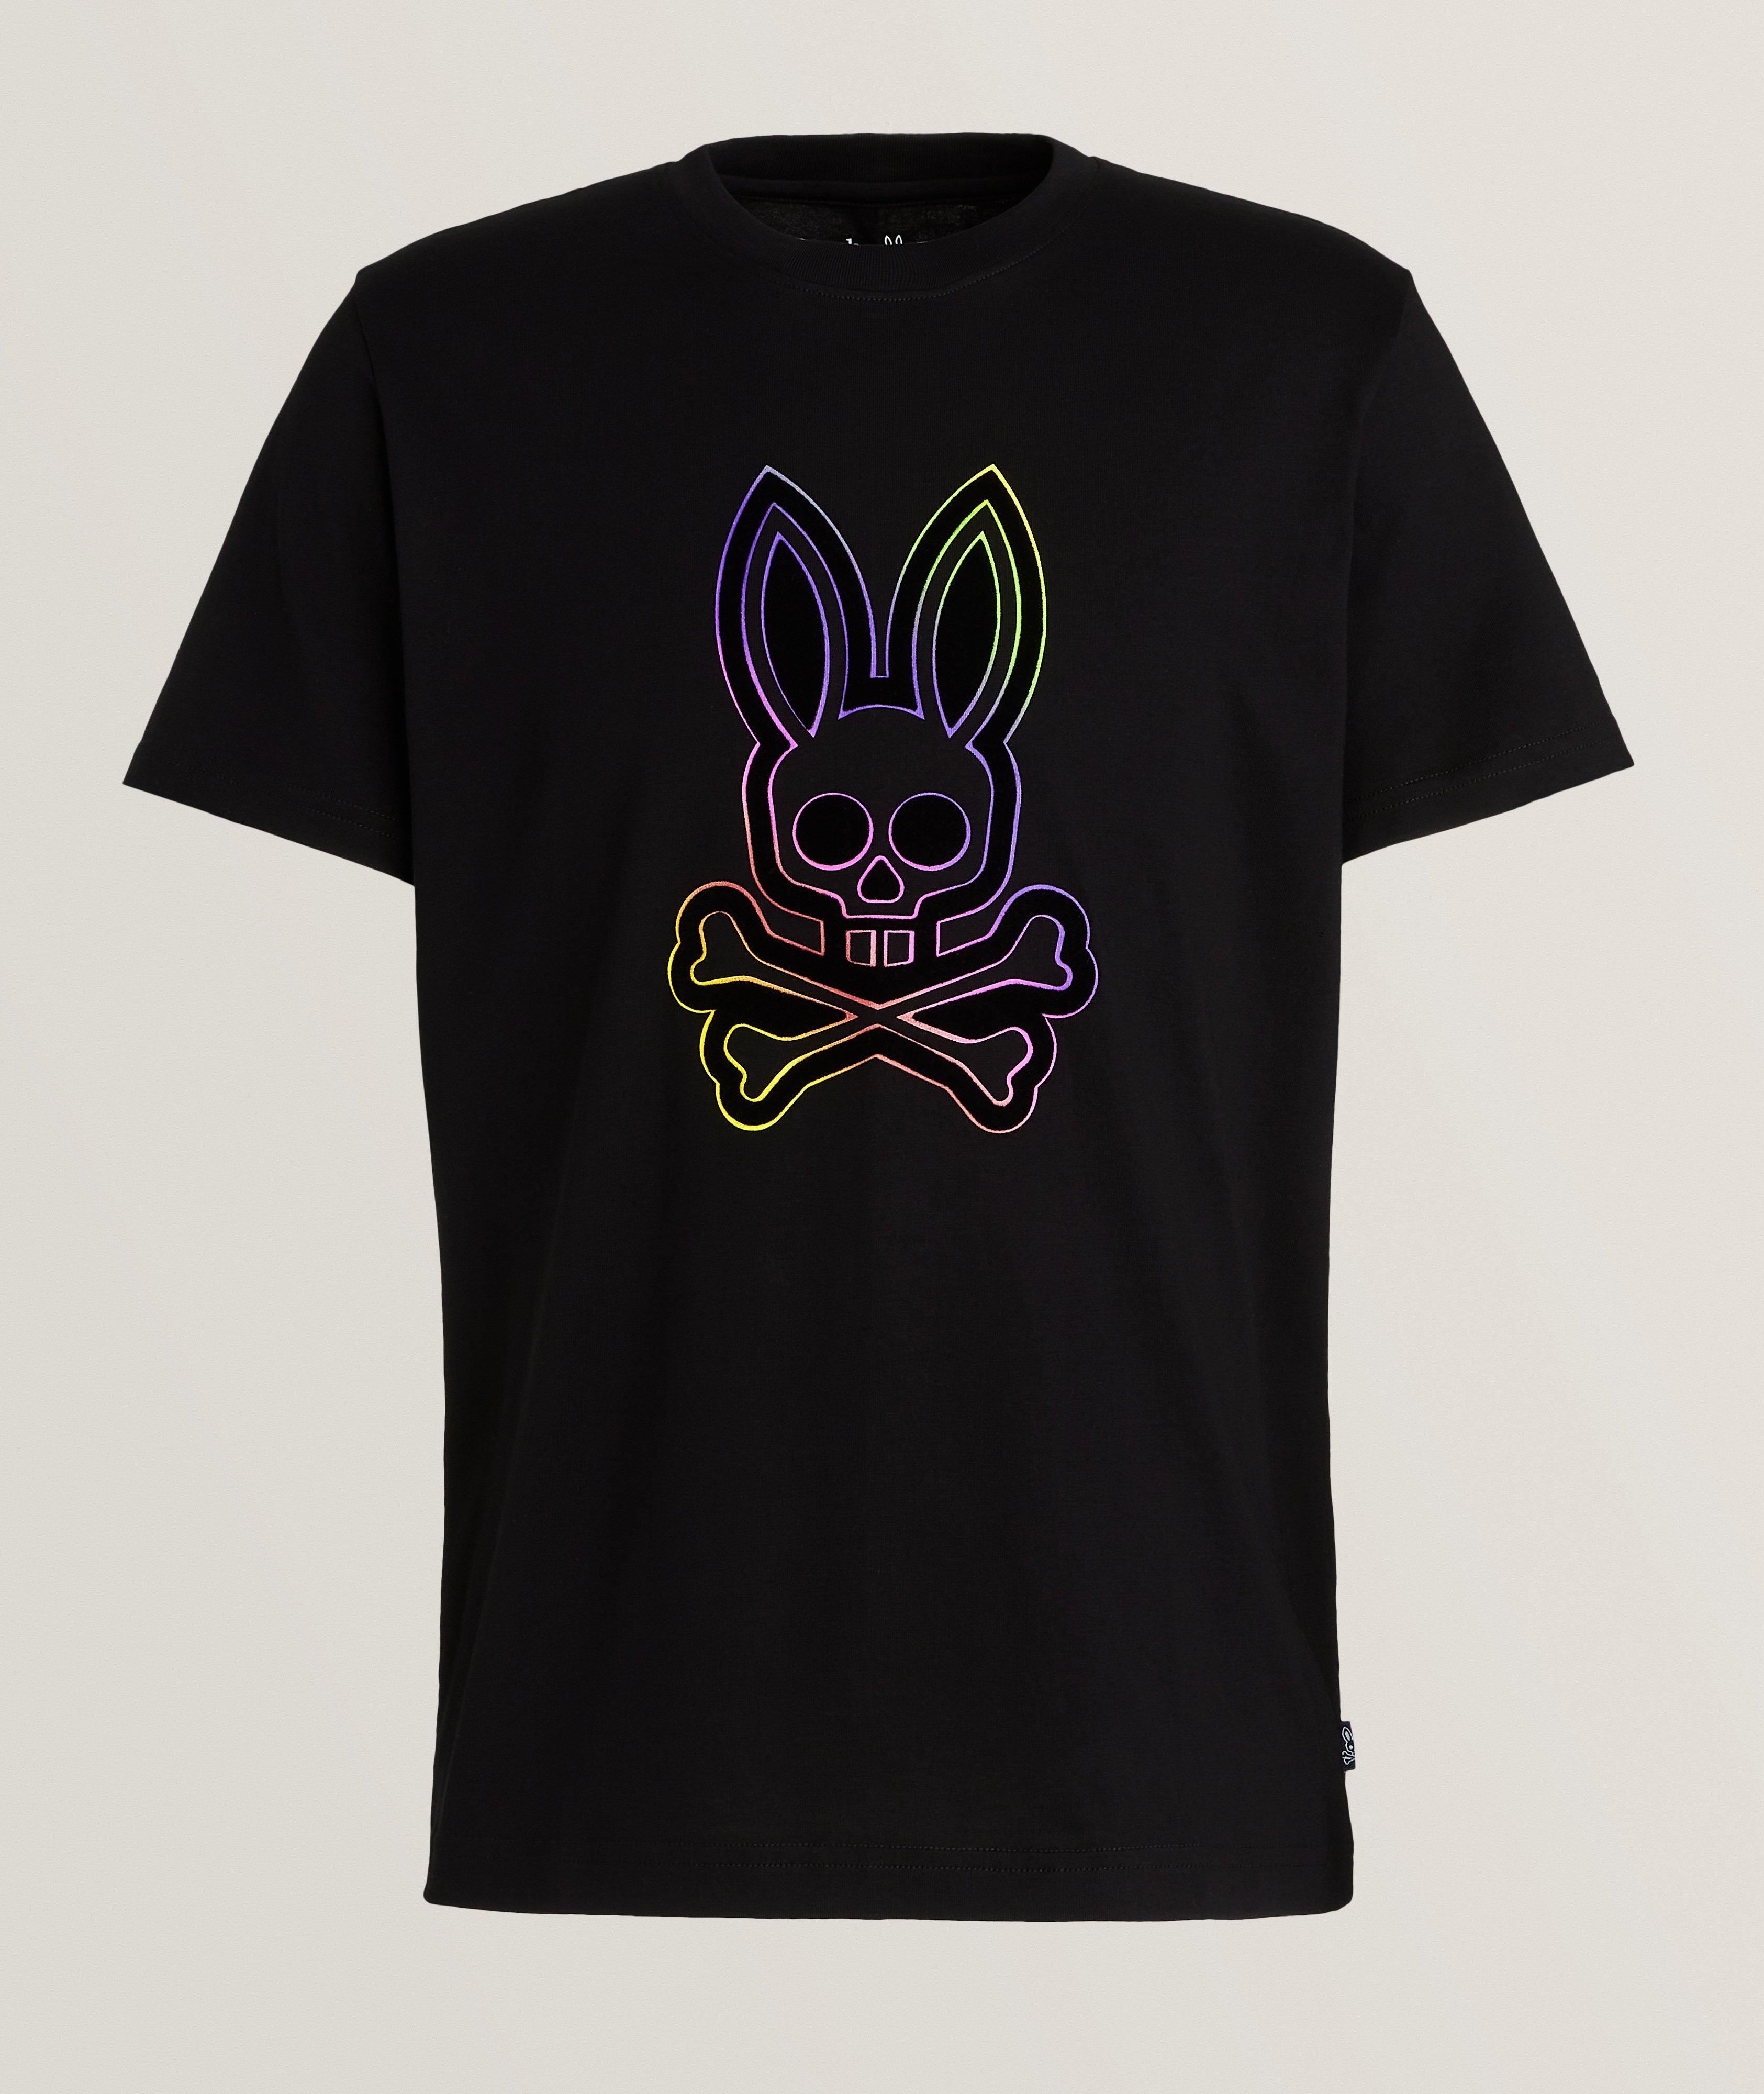 Psycho Bunny – Club Uomo Montreal